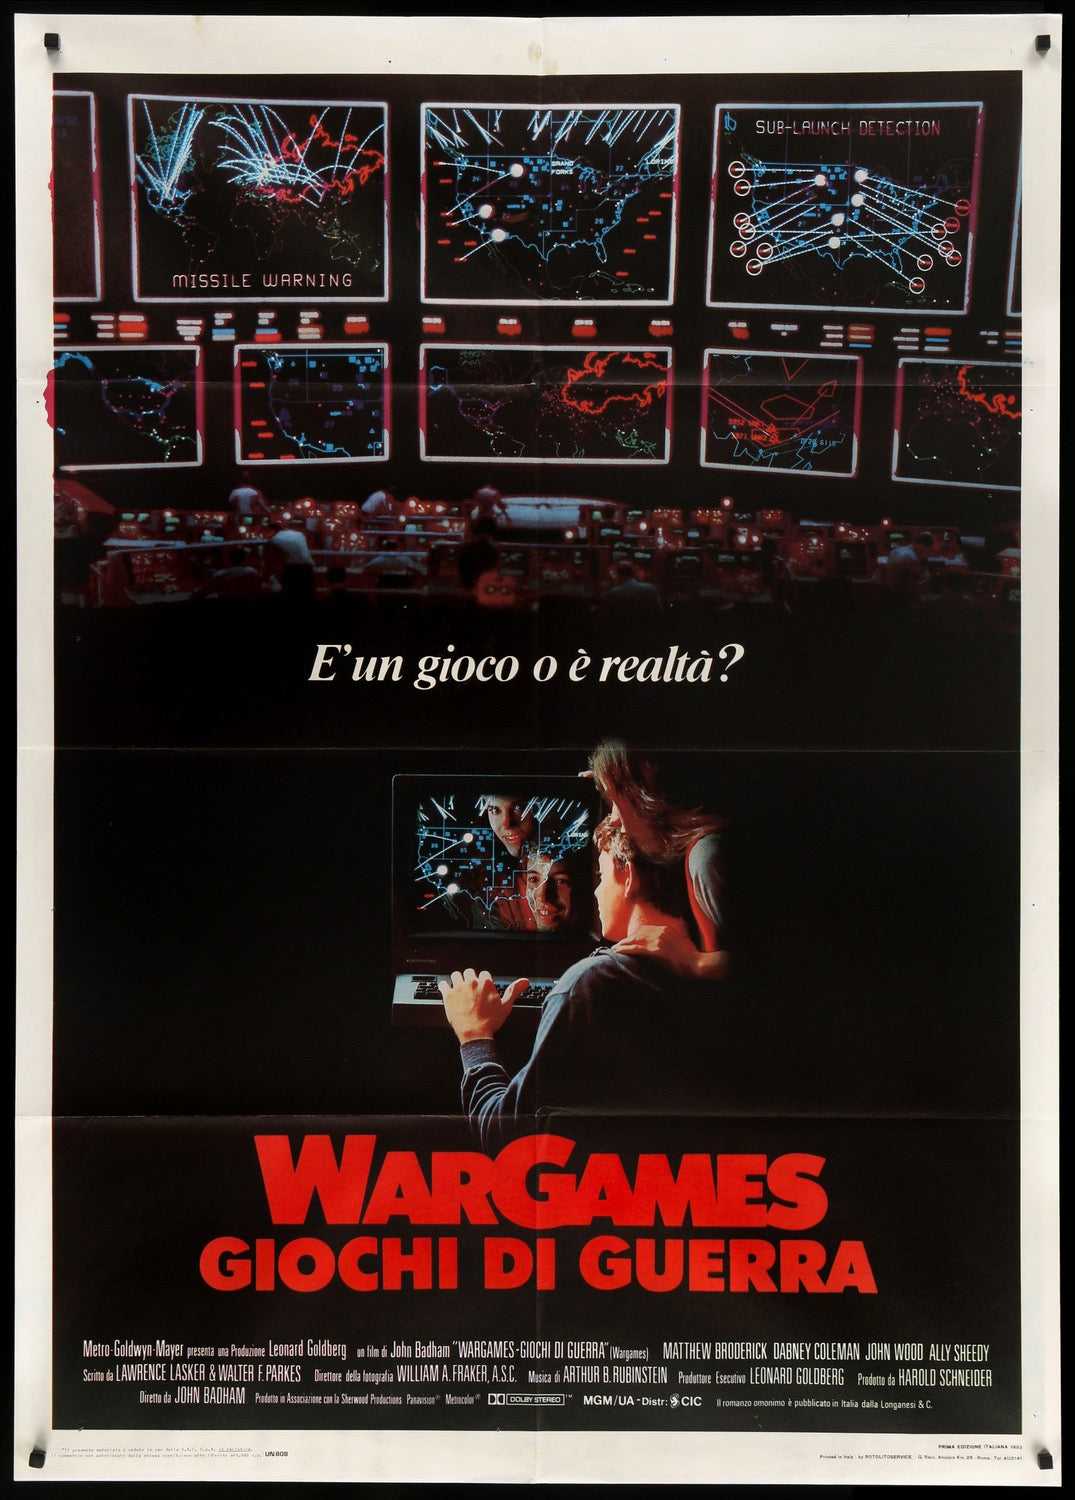 war games 1983